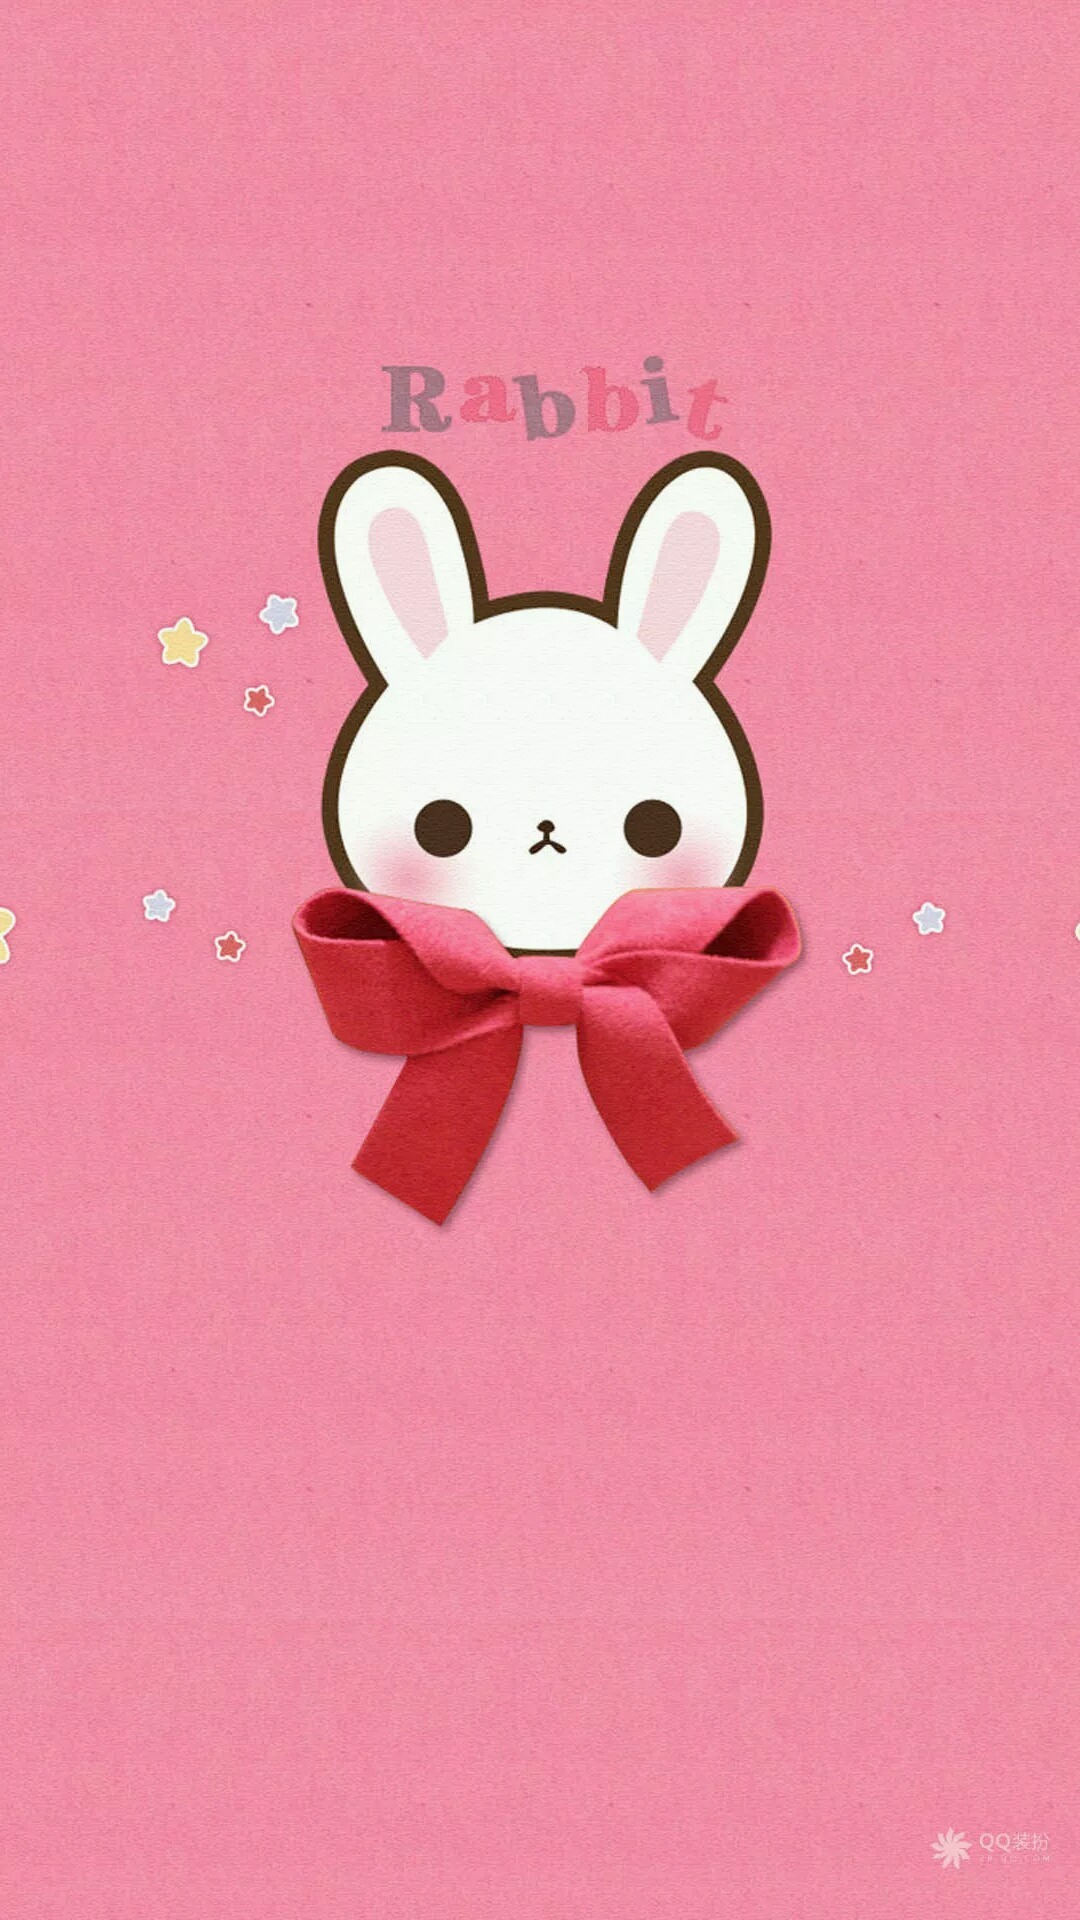 画像 可愛いウサギ 兎 うさぎ のスマホ壁紙 待ち受け画像 Rabbit Bunny イラスト まとめ Naver まとめ